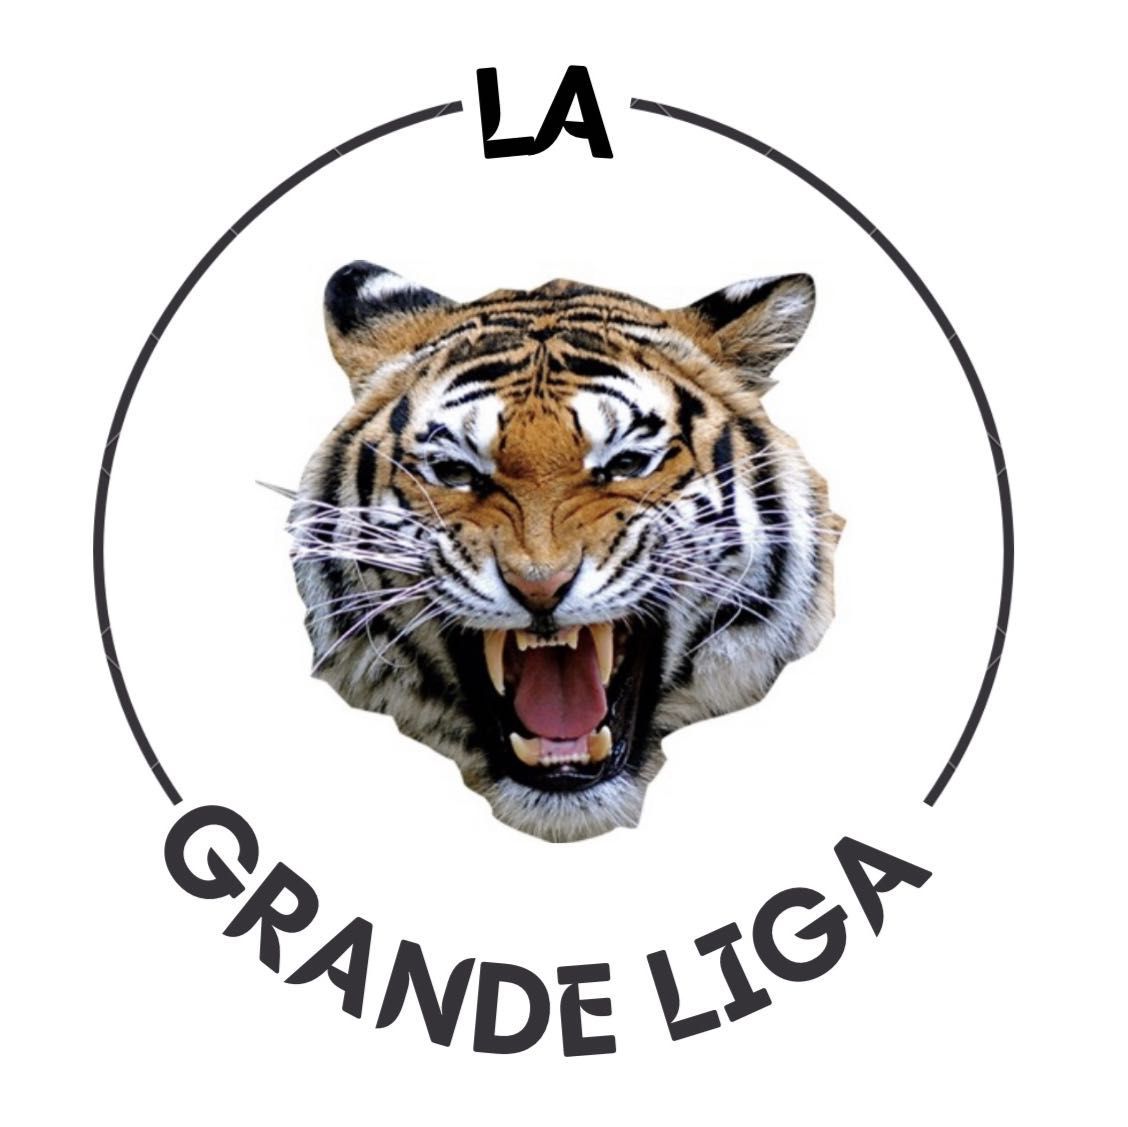 La Grande liga barber studio, Carrer d'Antoni Forrellad, 131, 08207, Sabadell